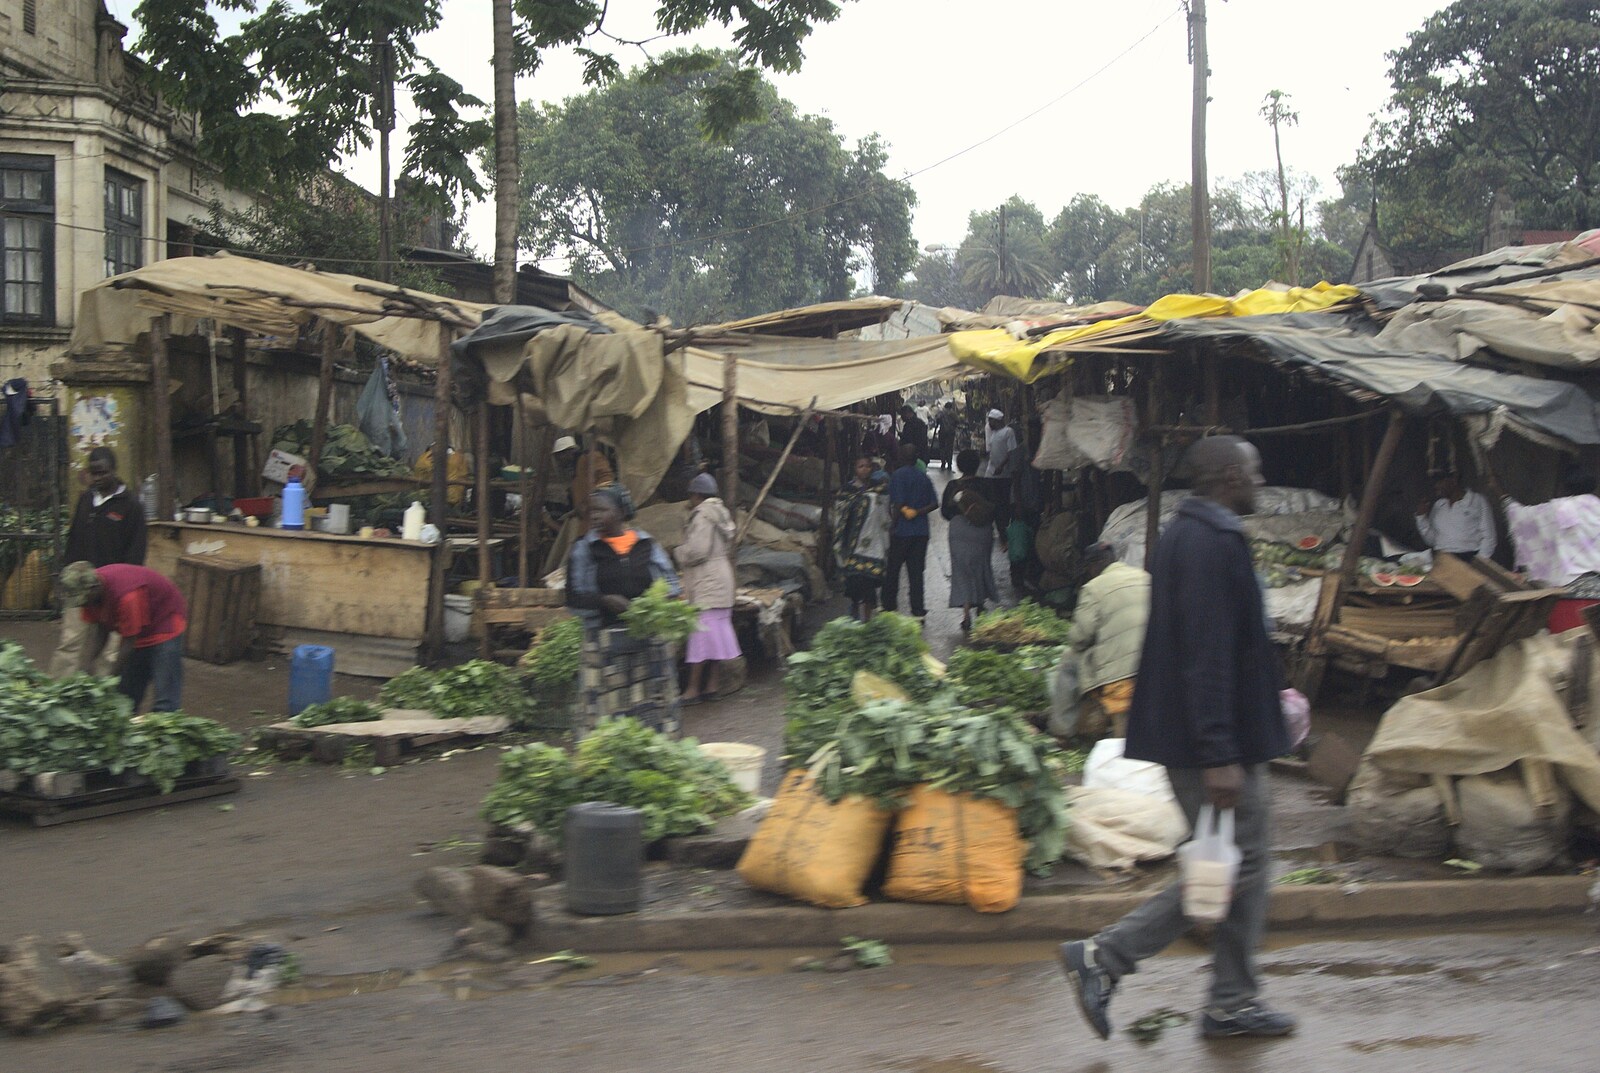 A local market from Nairobi and the Road to Maasai Mara, Kenya, Africa - 1st November 2010